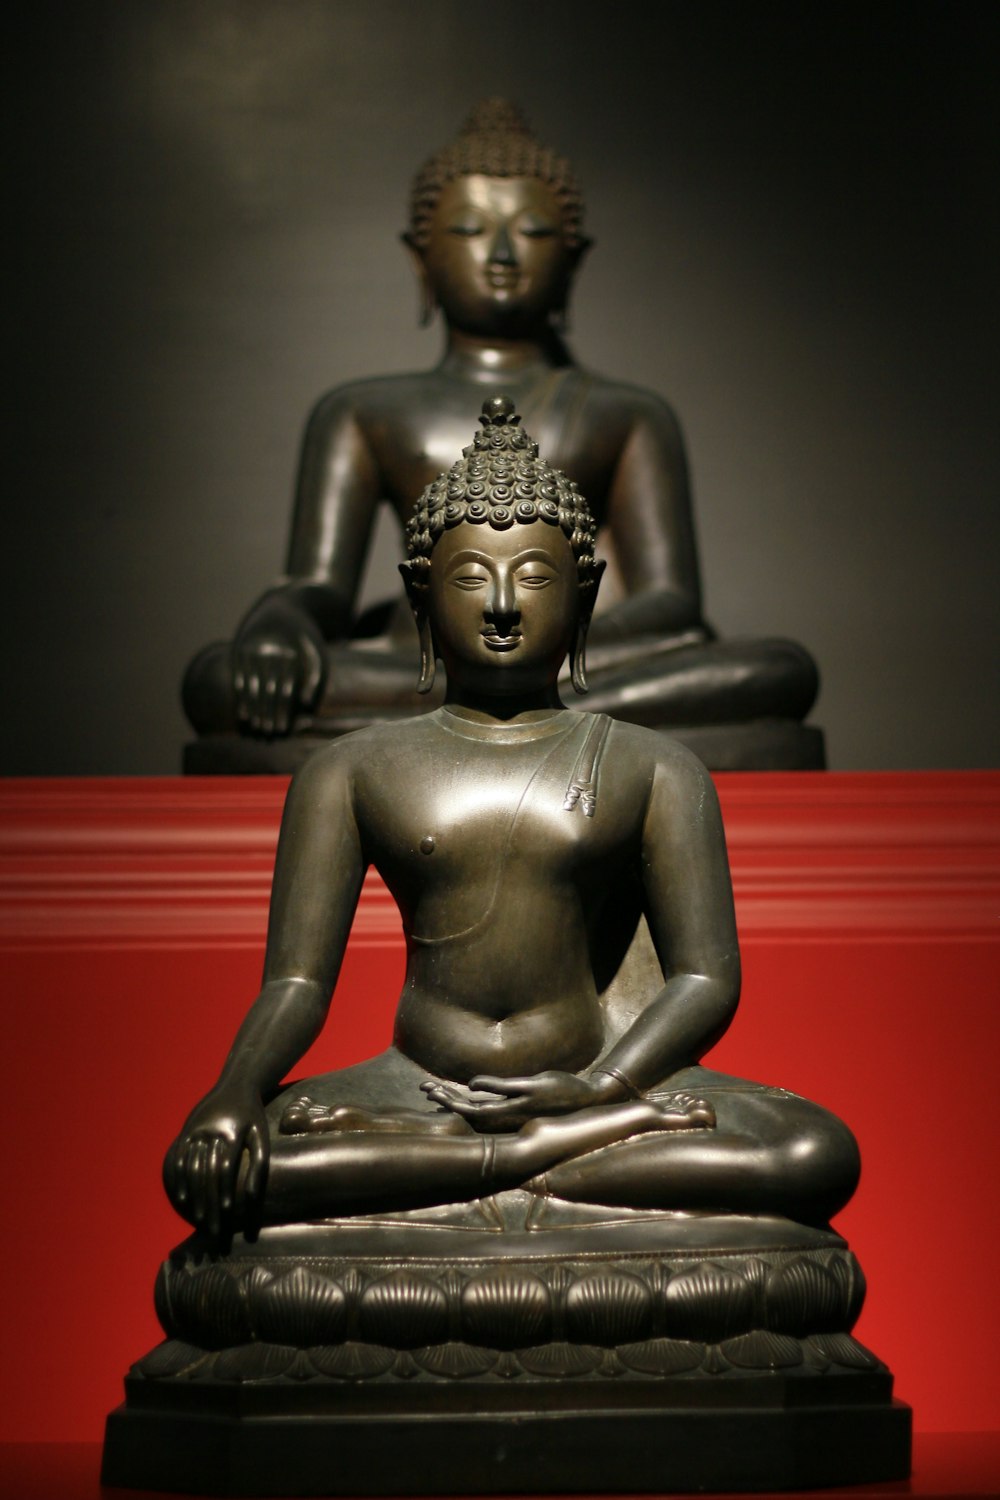 Une statue d’un Bouddha assis dans une position de méditation